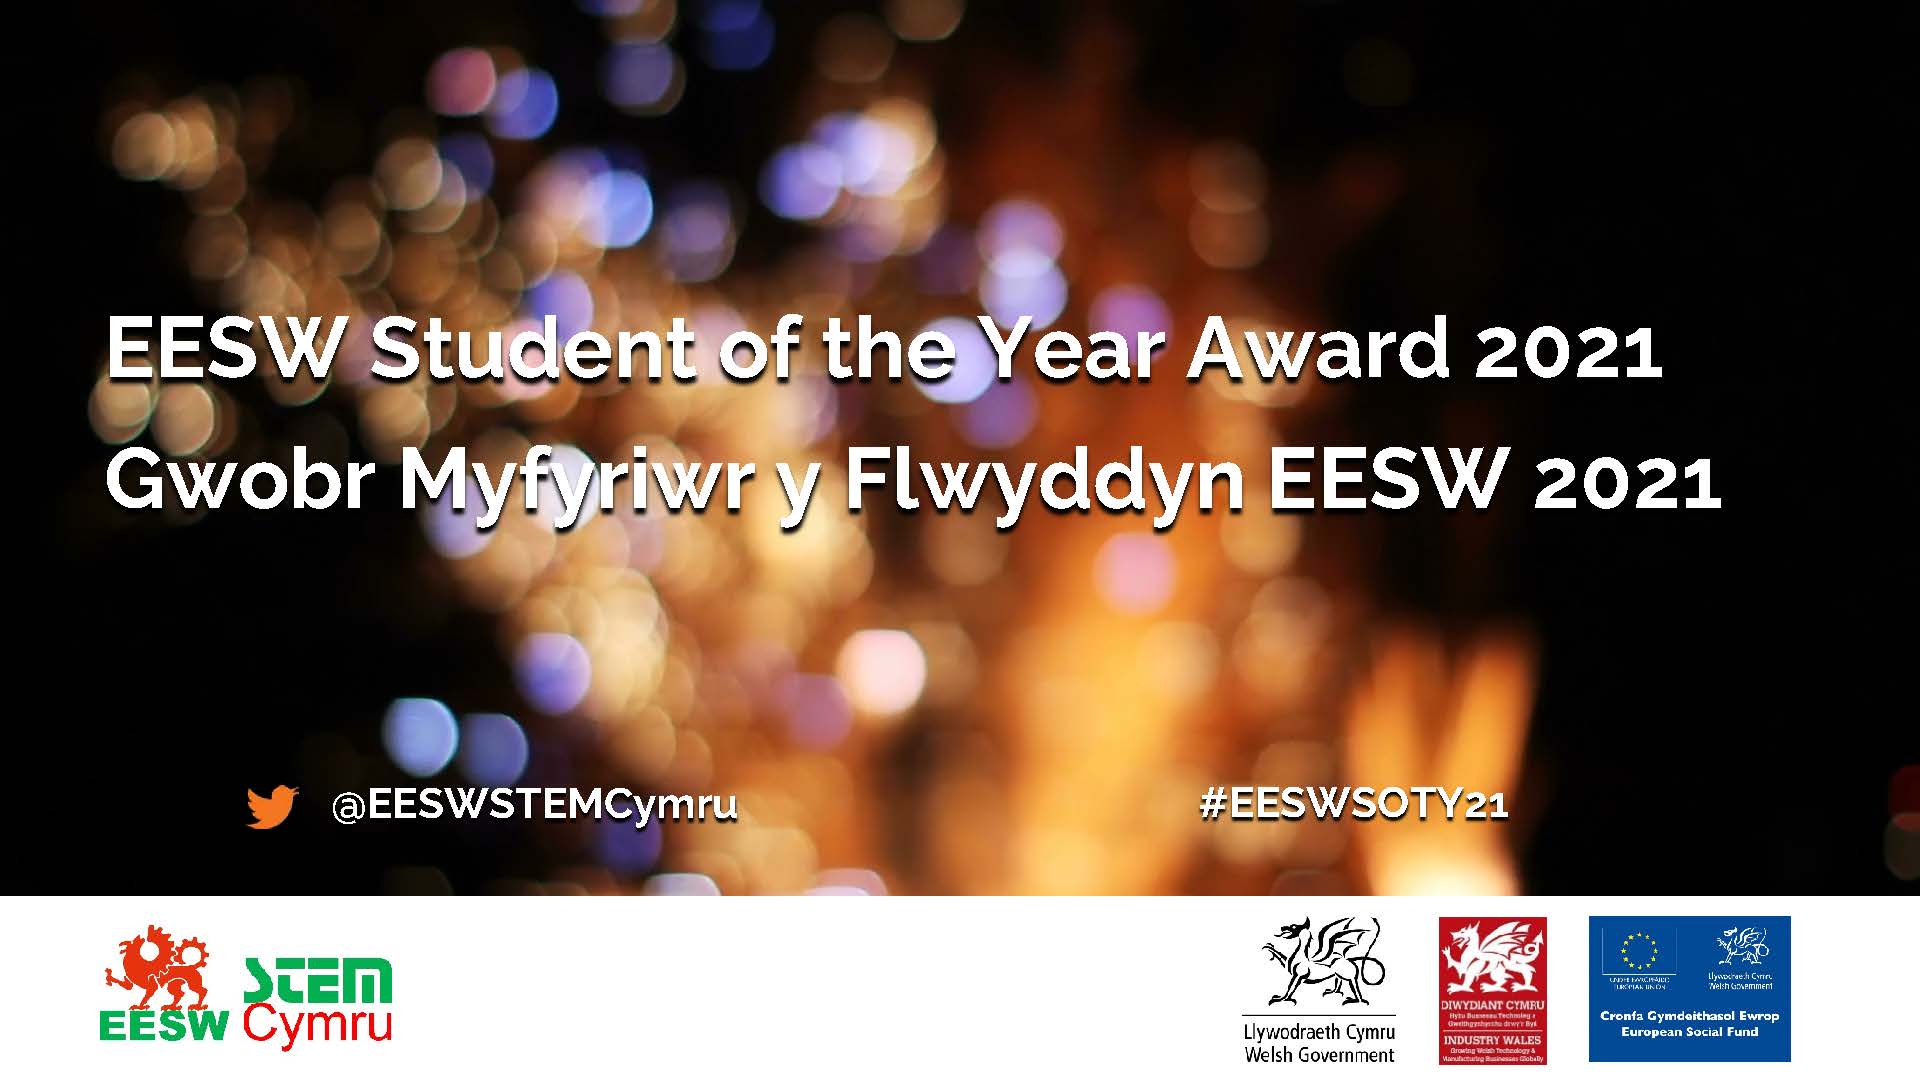 Gwobr Myfyriwr y Flwyddyn EESW 2021